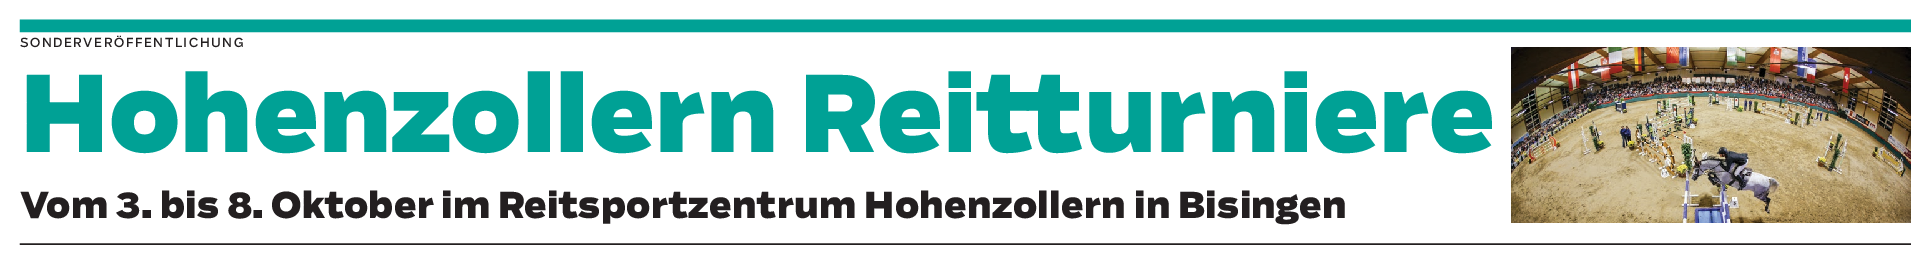 Hohenzollern Reitturniere vom 3. bis 8. Oktober in Bissingen: Eine feste Institution